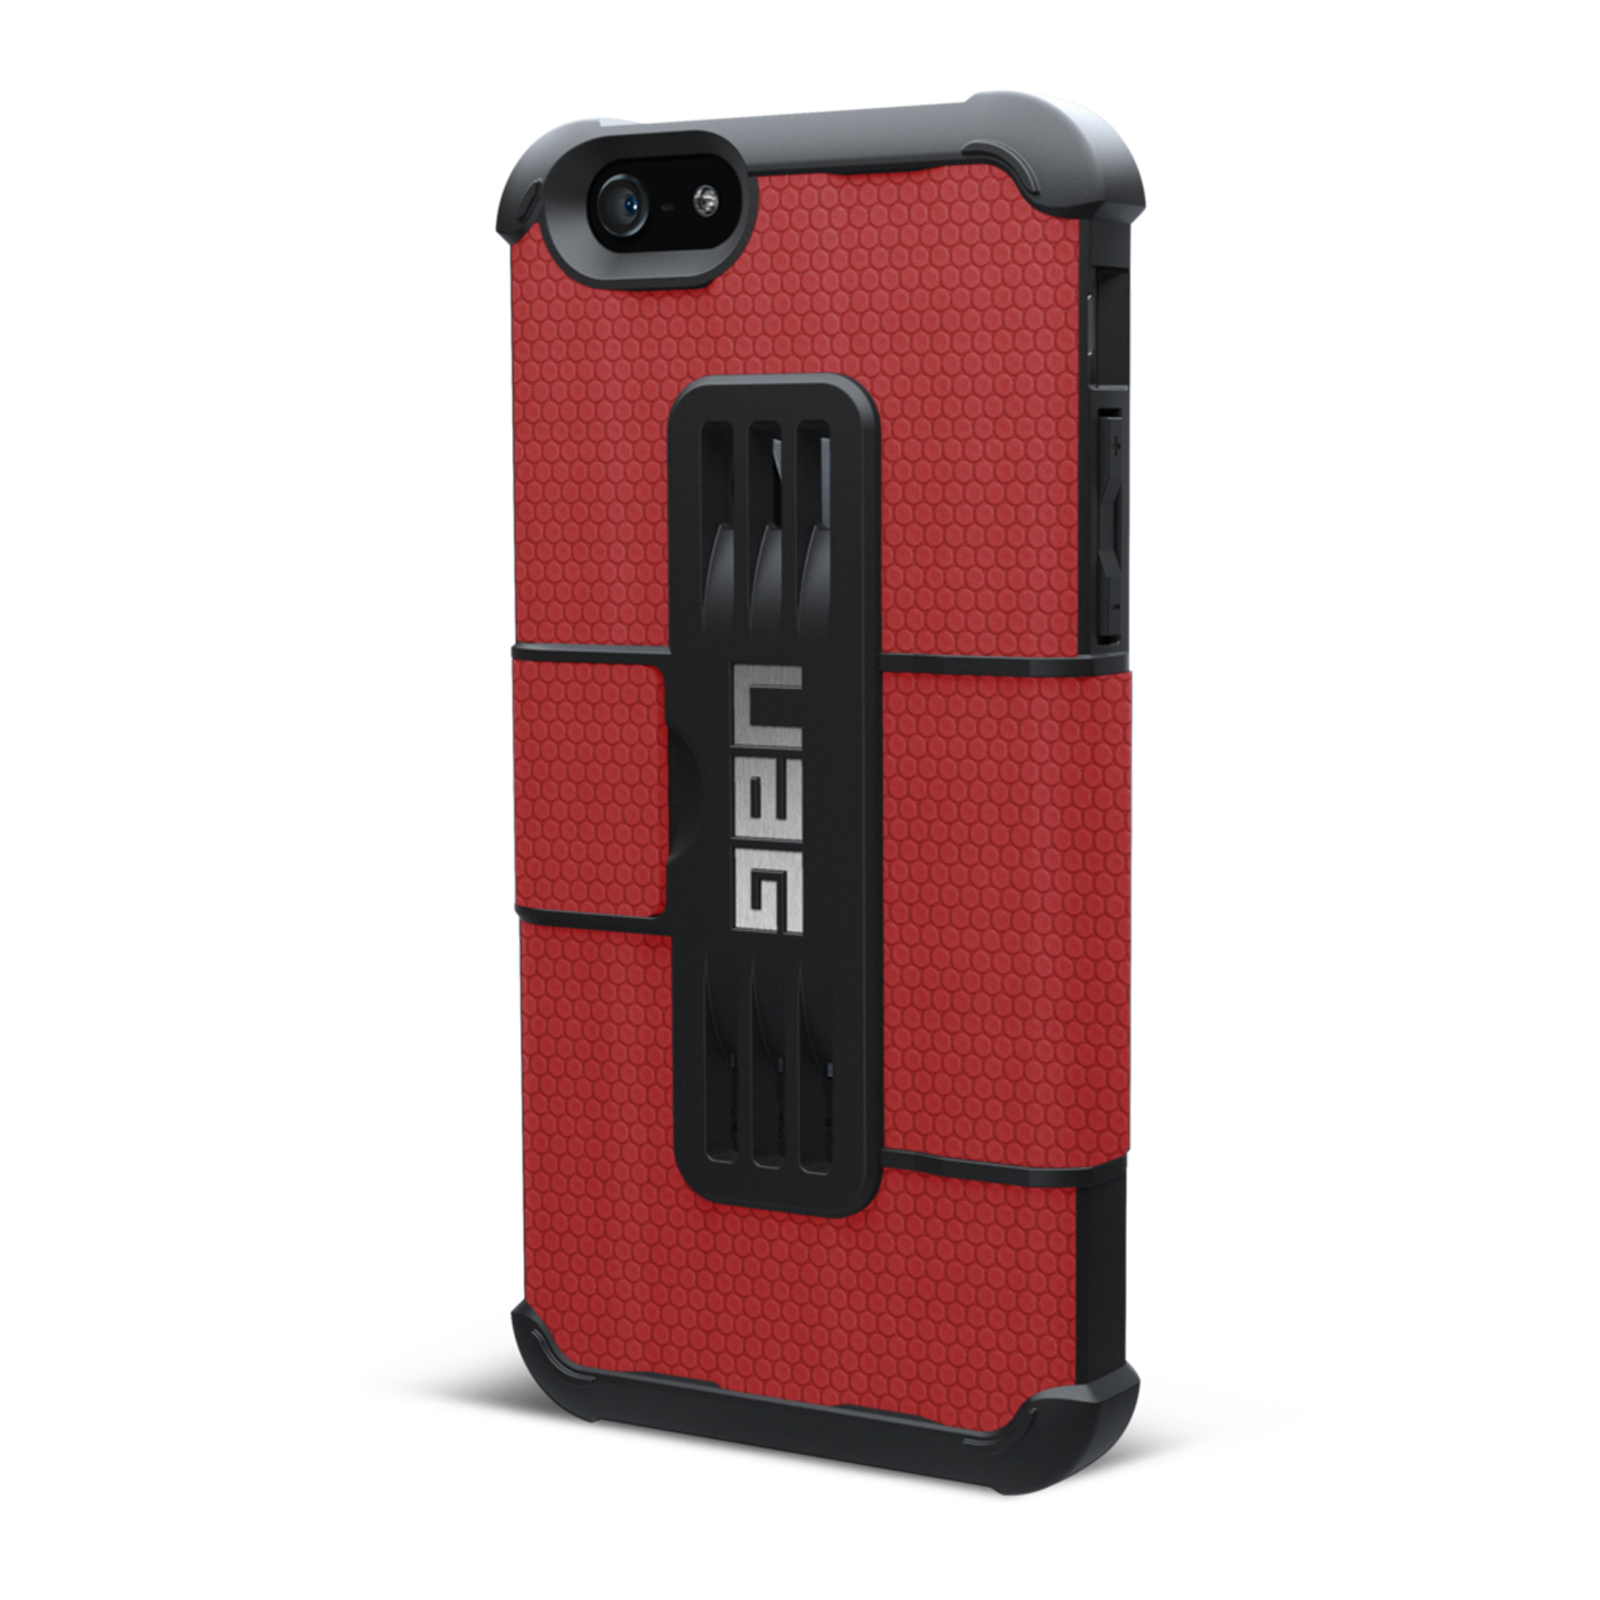 UAG iPhone 6 Plus and 6s Plus Folio Case - Rogue - Red/Black